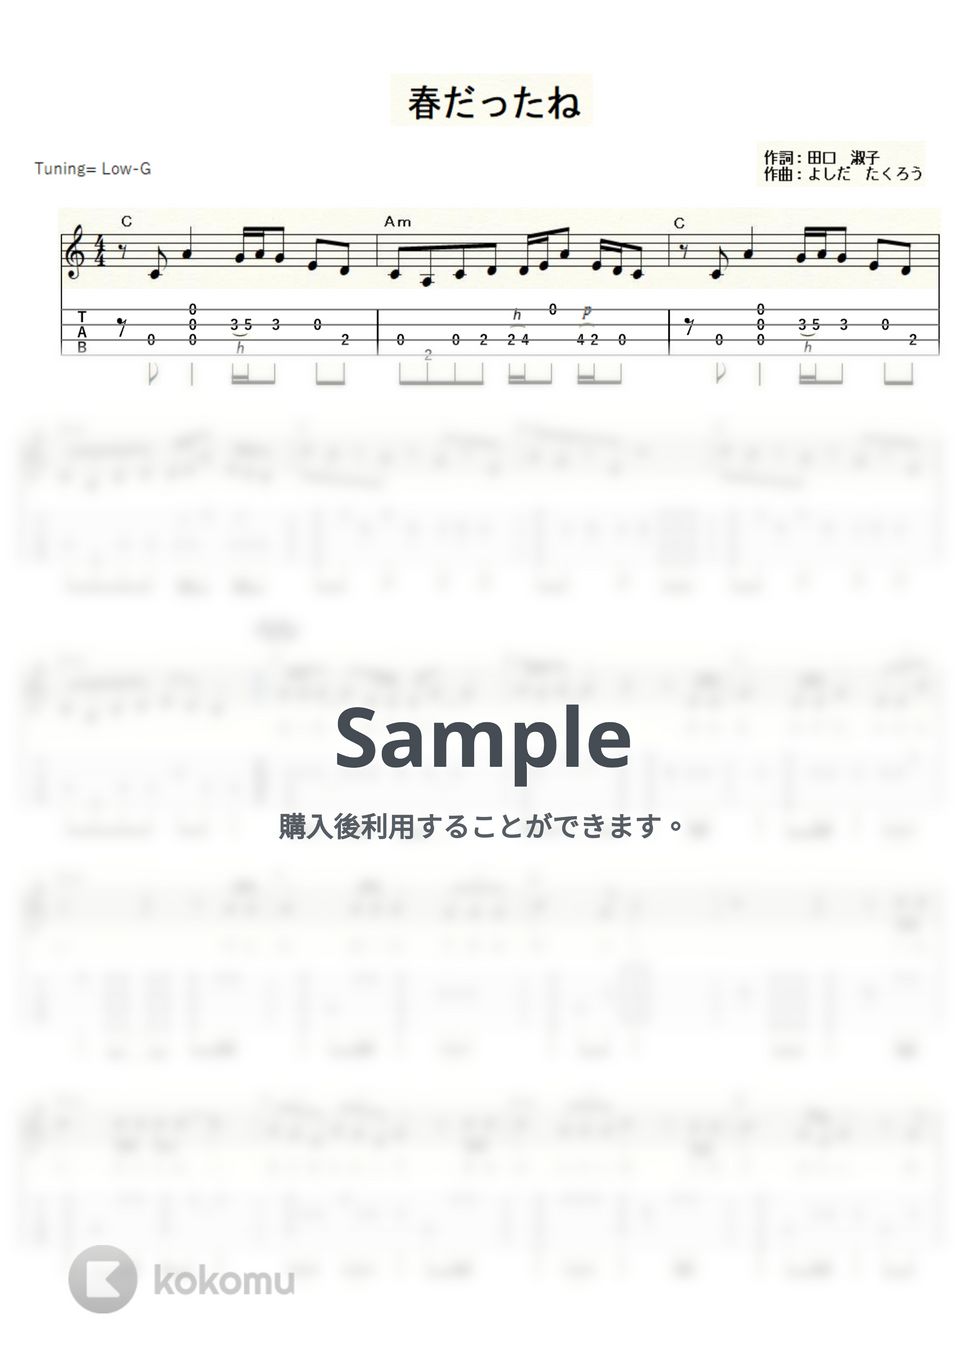 吉田拓郎 - 春だったね (ｳｸﾚﾚｿﾛ/Low-G/中級) by ukulelepapa